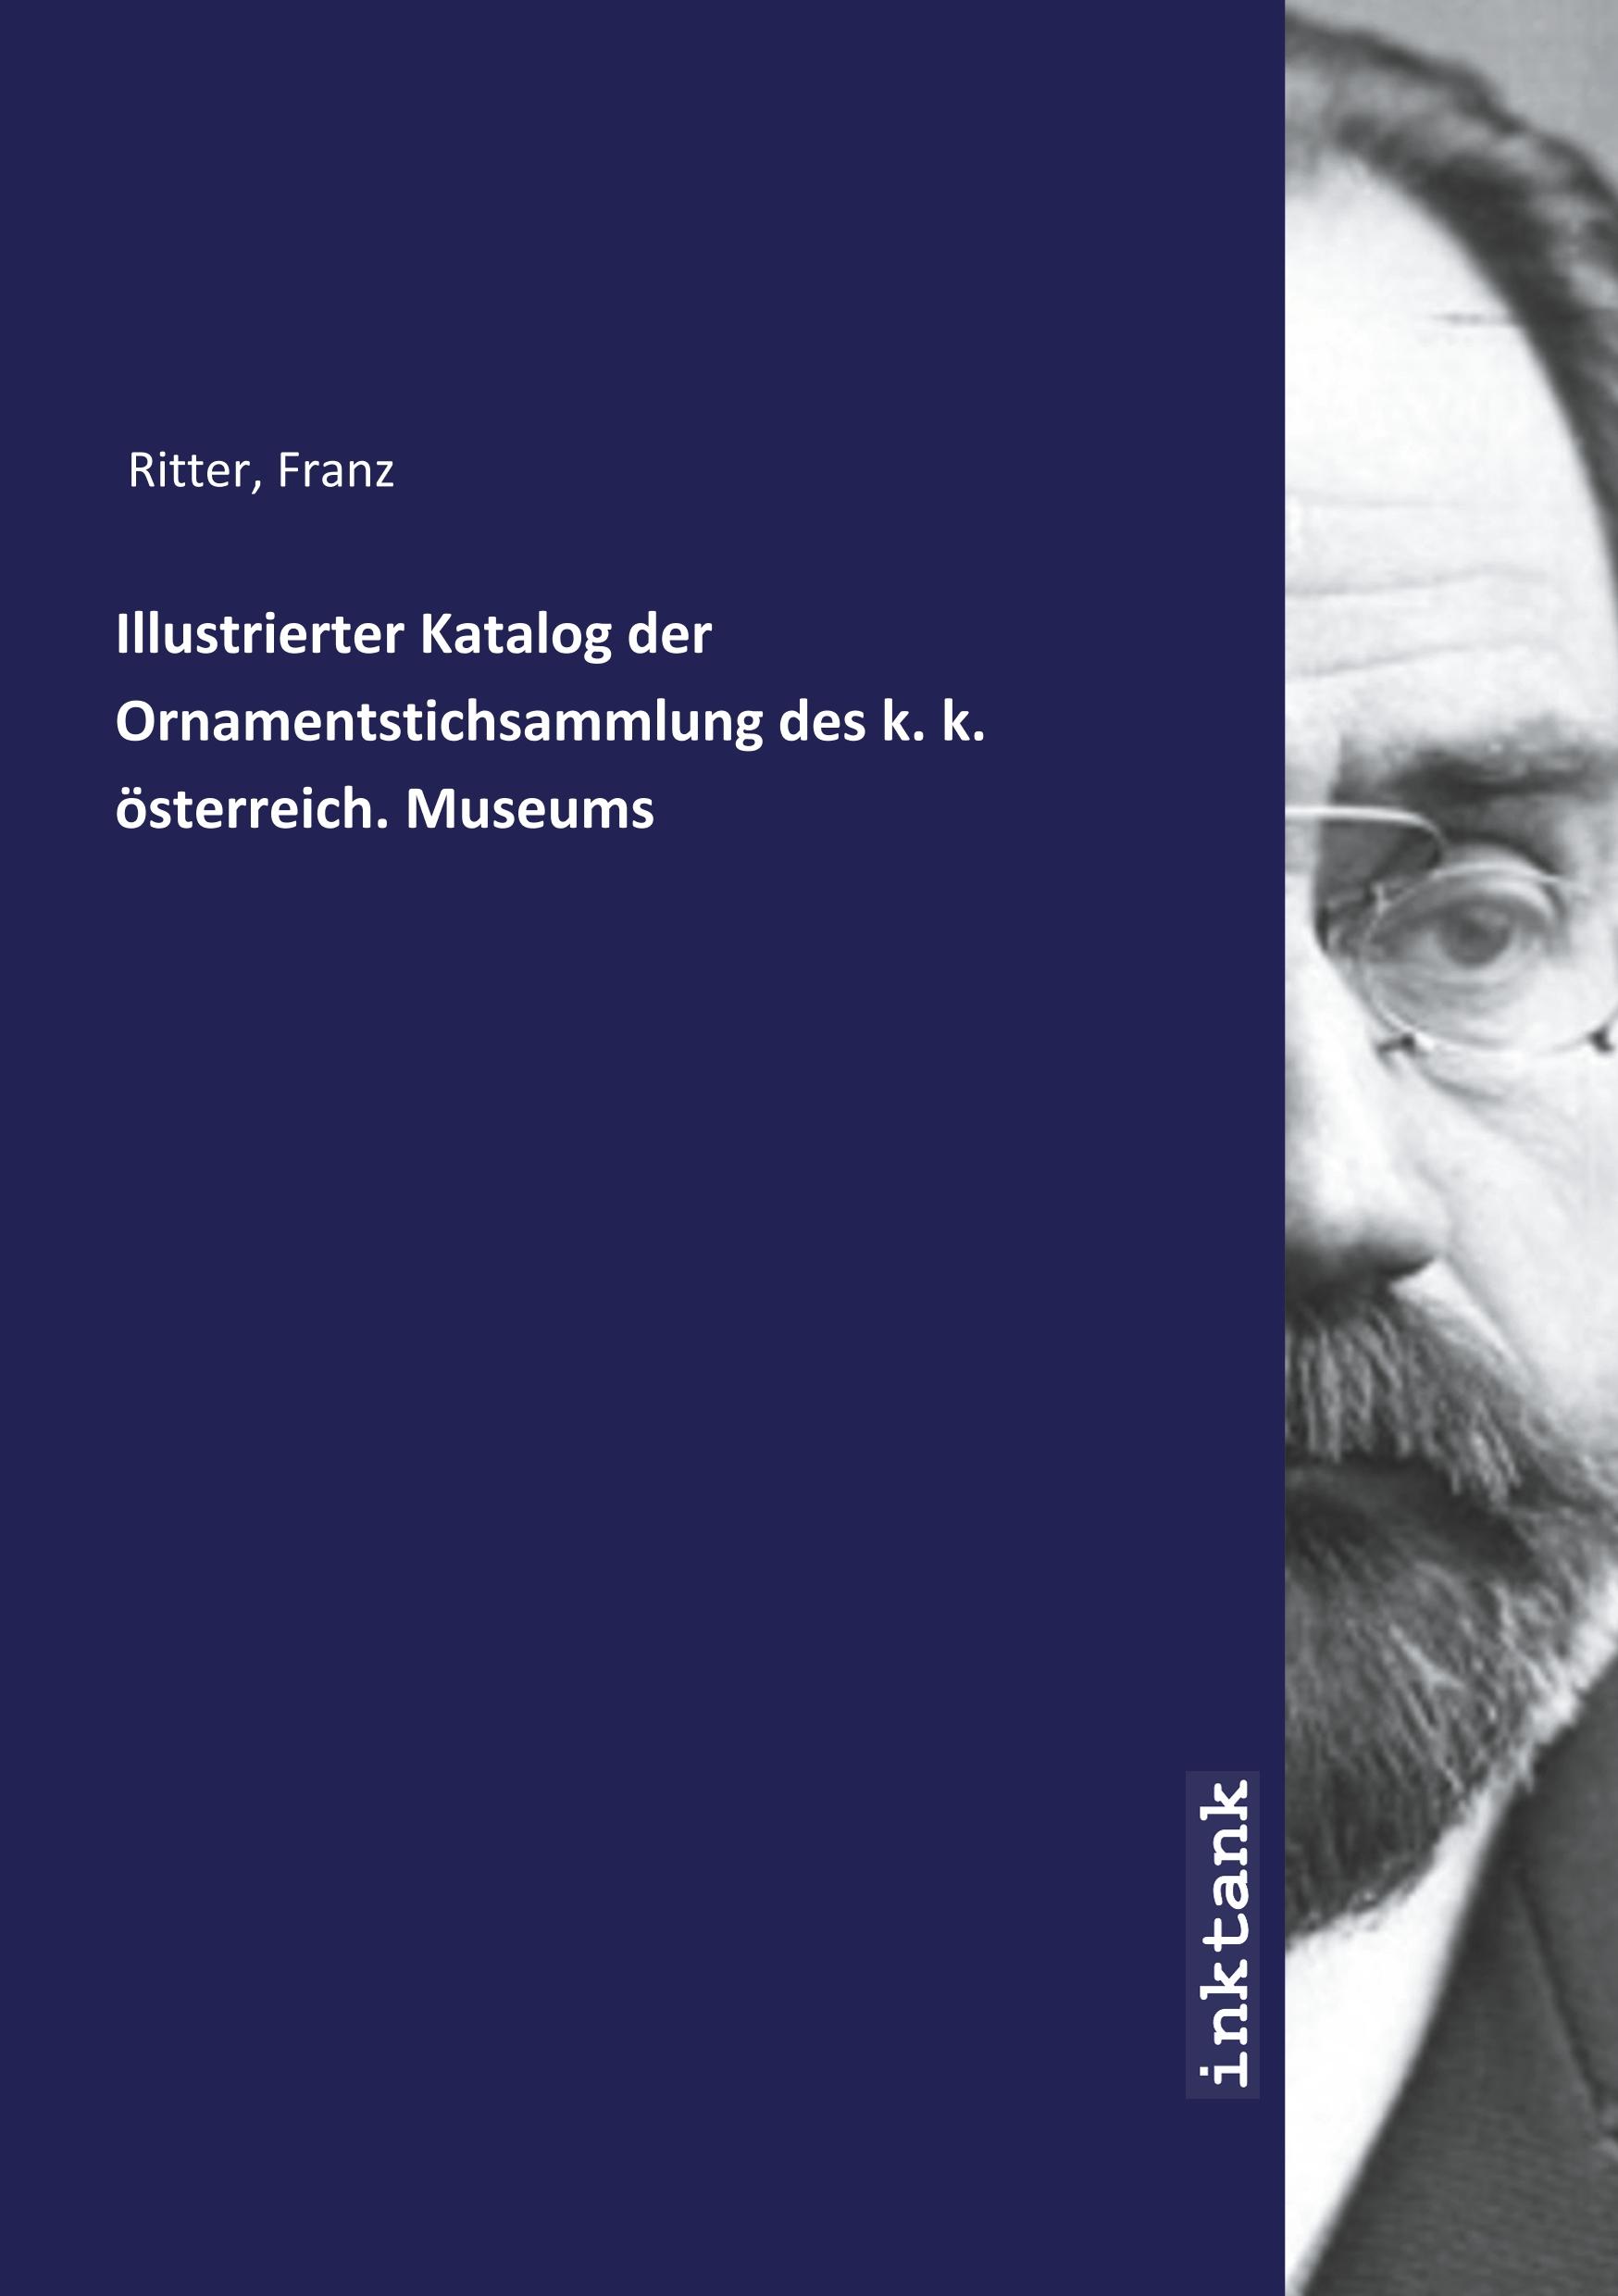 Illustrierter Katalog der Ornamentstichsammlung des k. k. oesterreich. Museums - Ritter, Franz